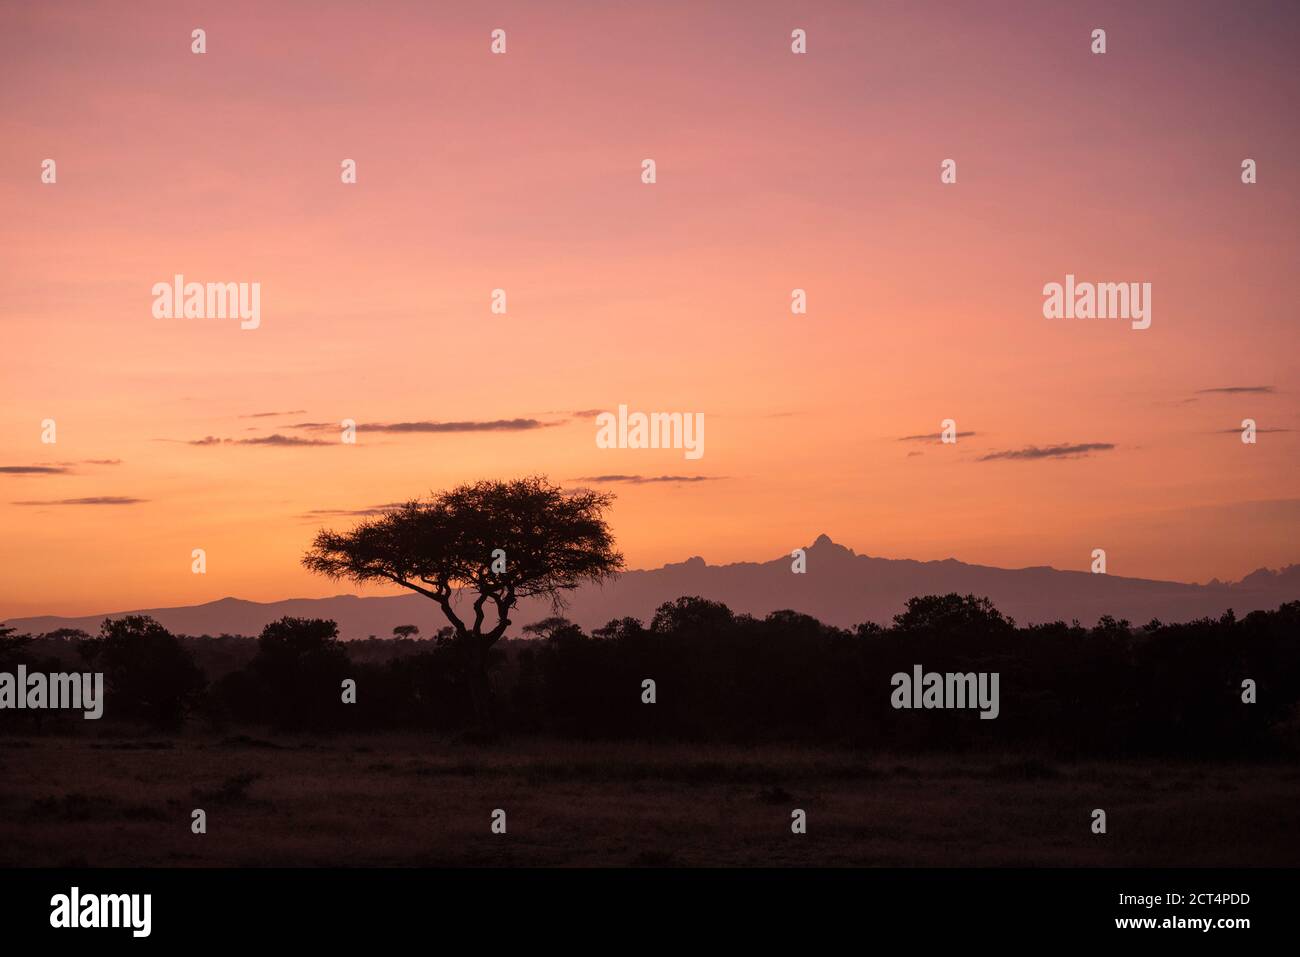 Acacia Trees and Mount Kenya at sunrise at El Karama Ranch, Laikipia County, Kenya Stock Photo